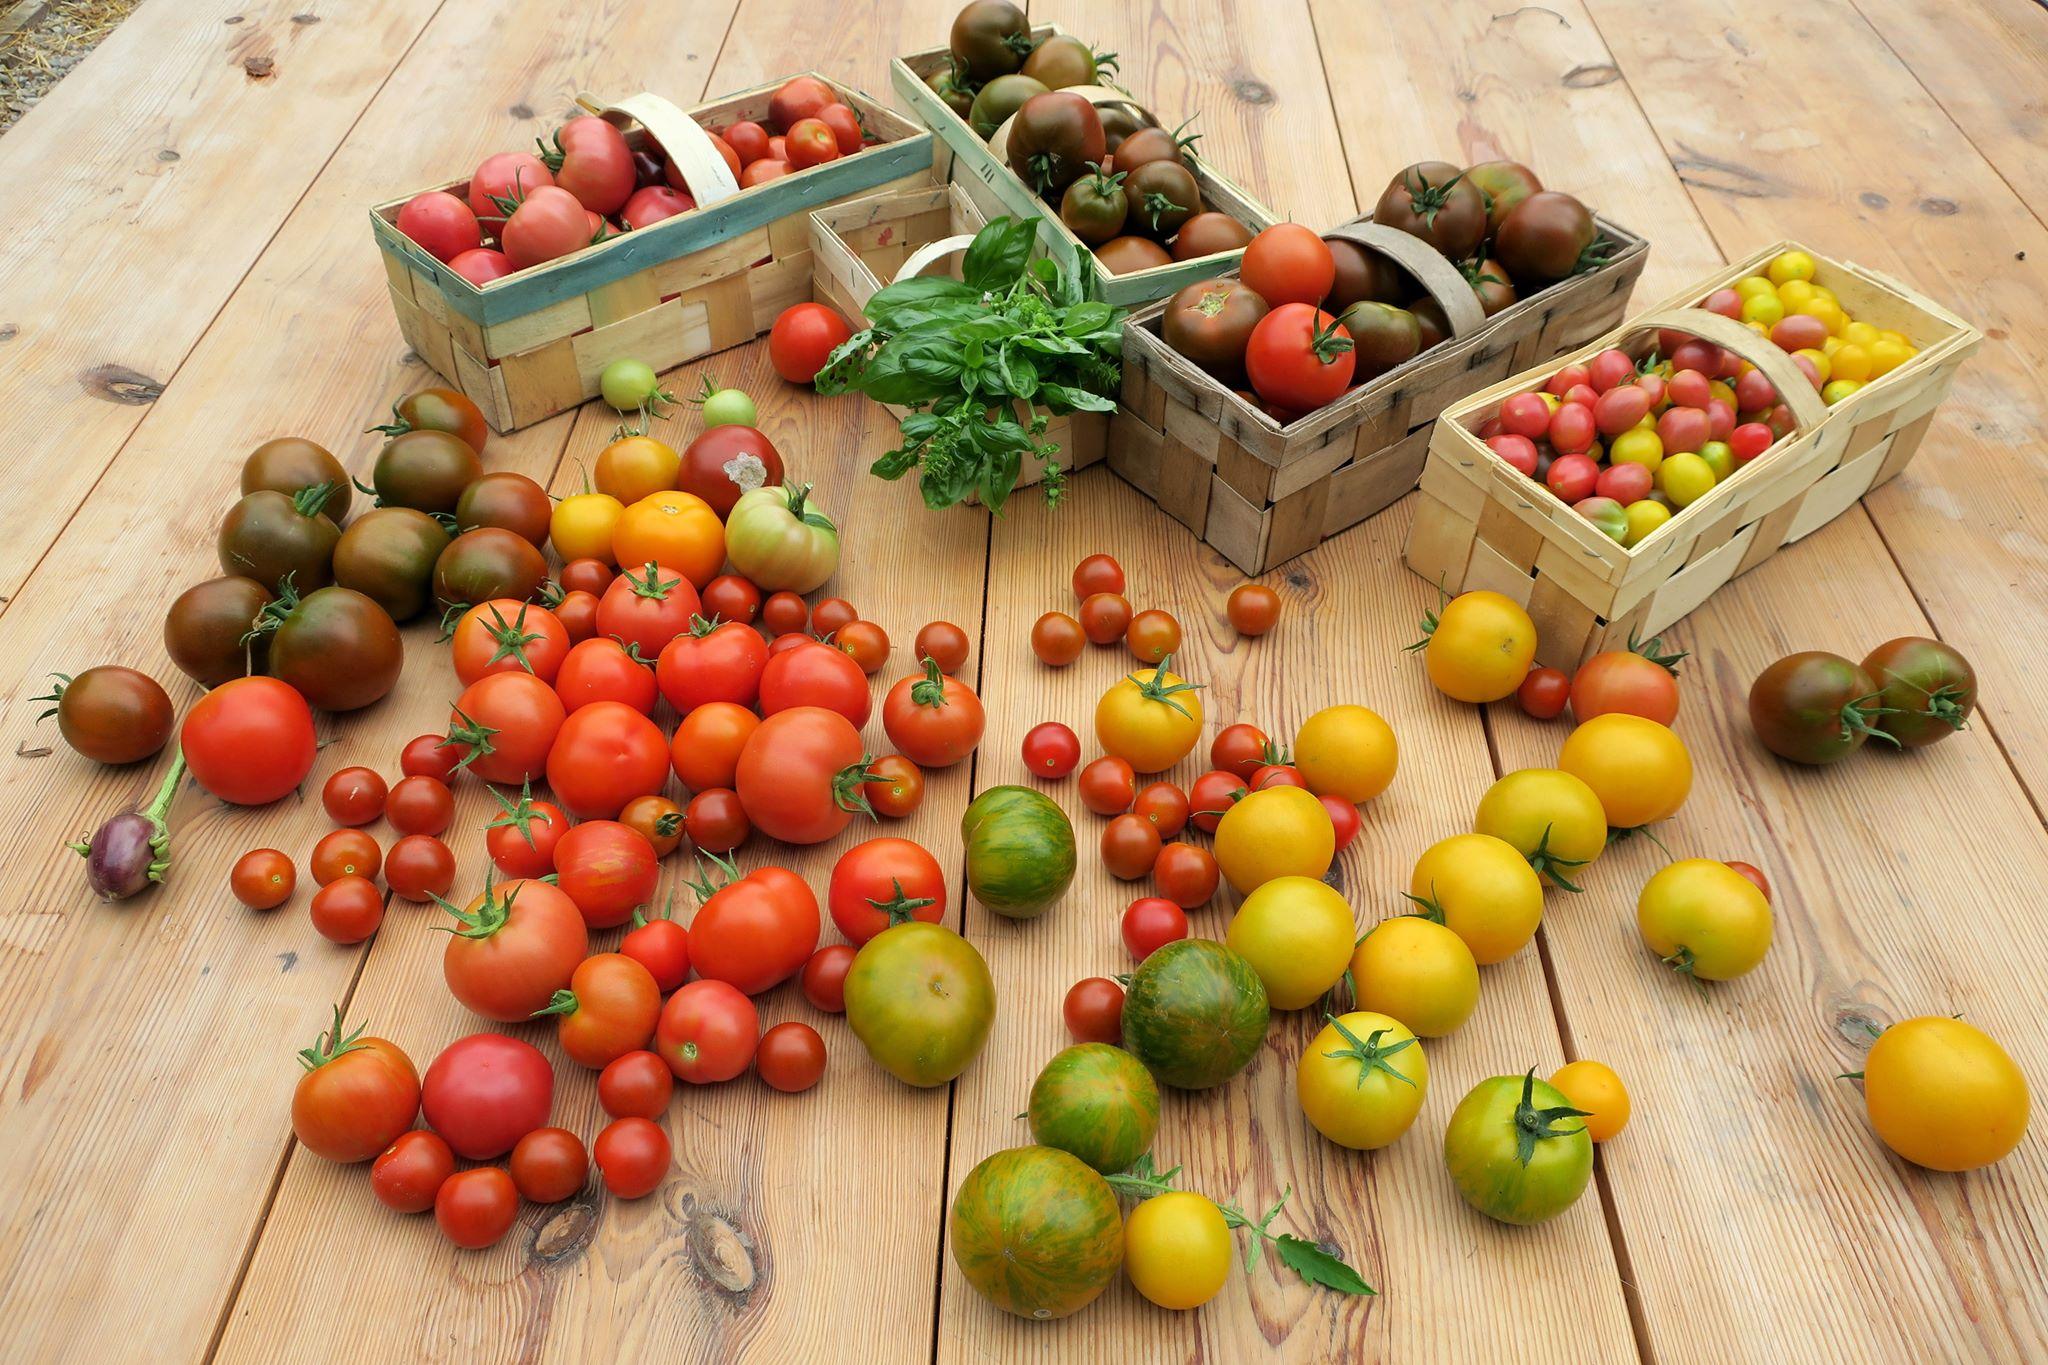  Własne pomidory smakują najlepiej. (Fot. Katarzyna Bellingham)